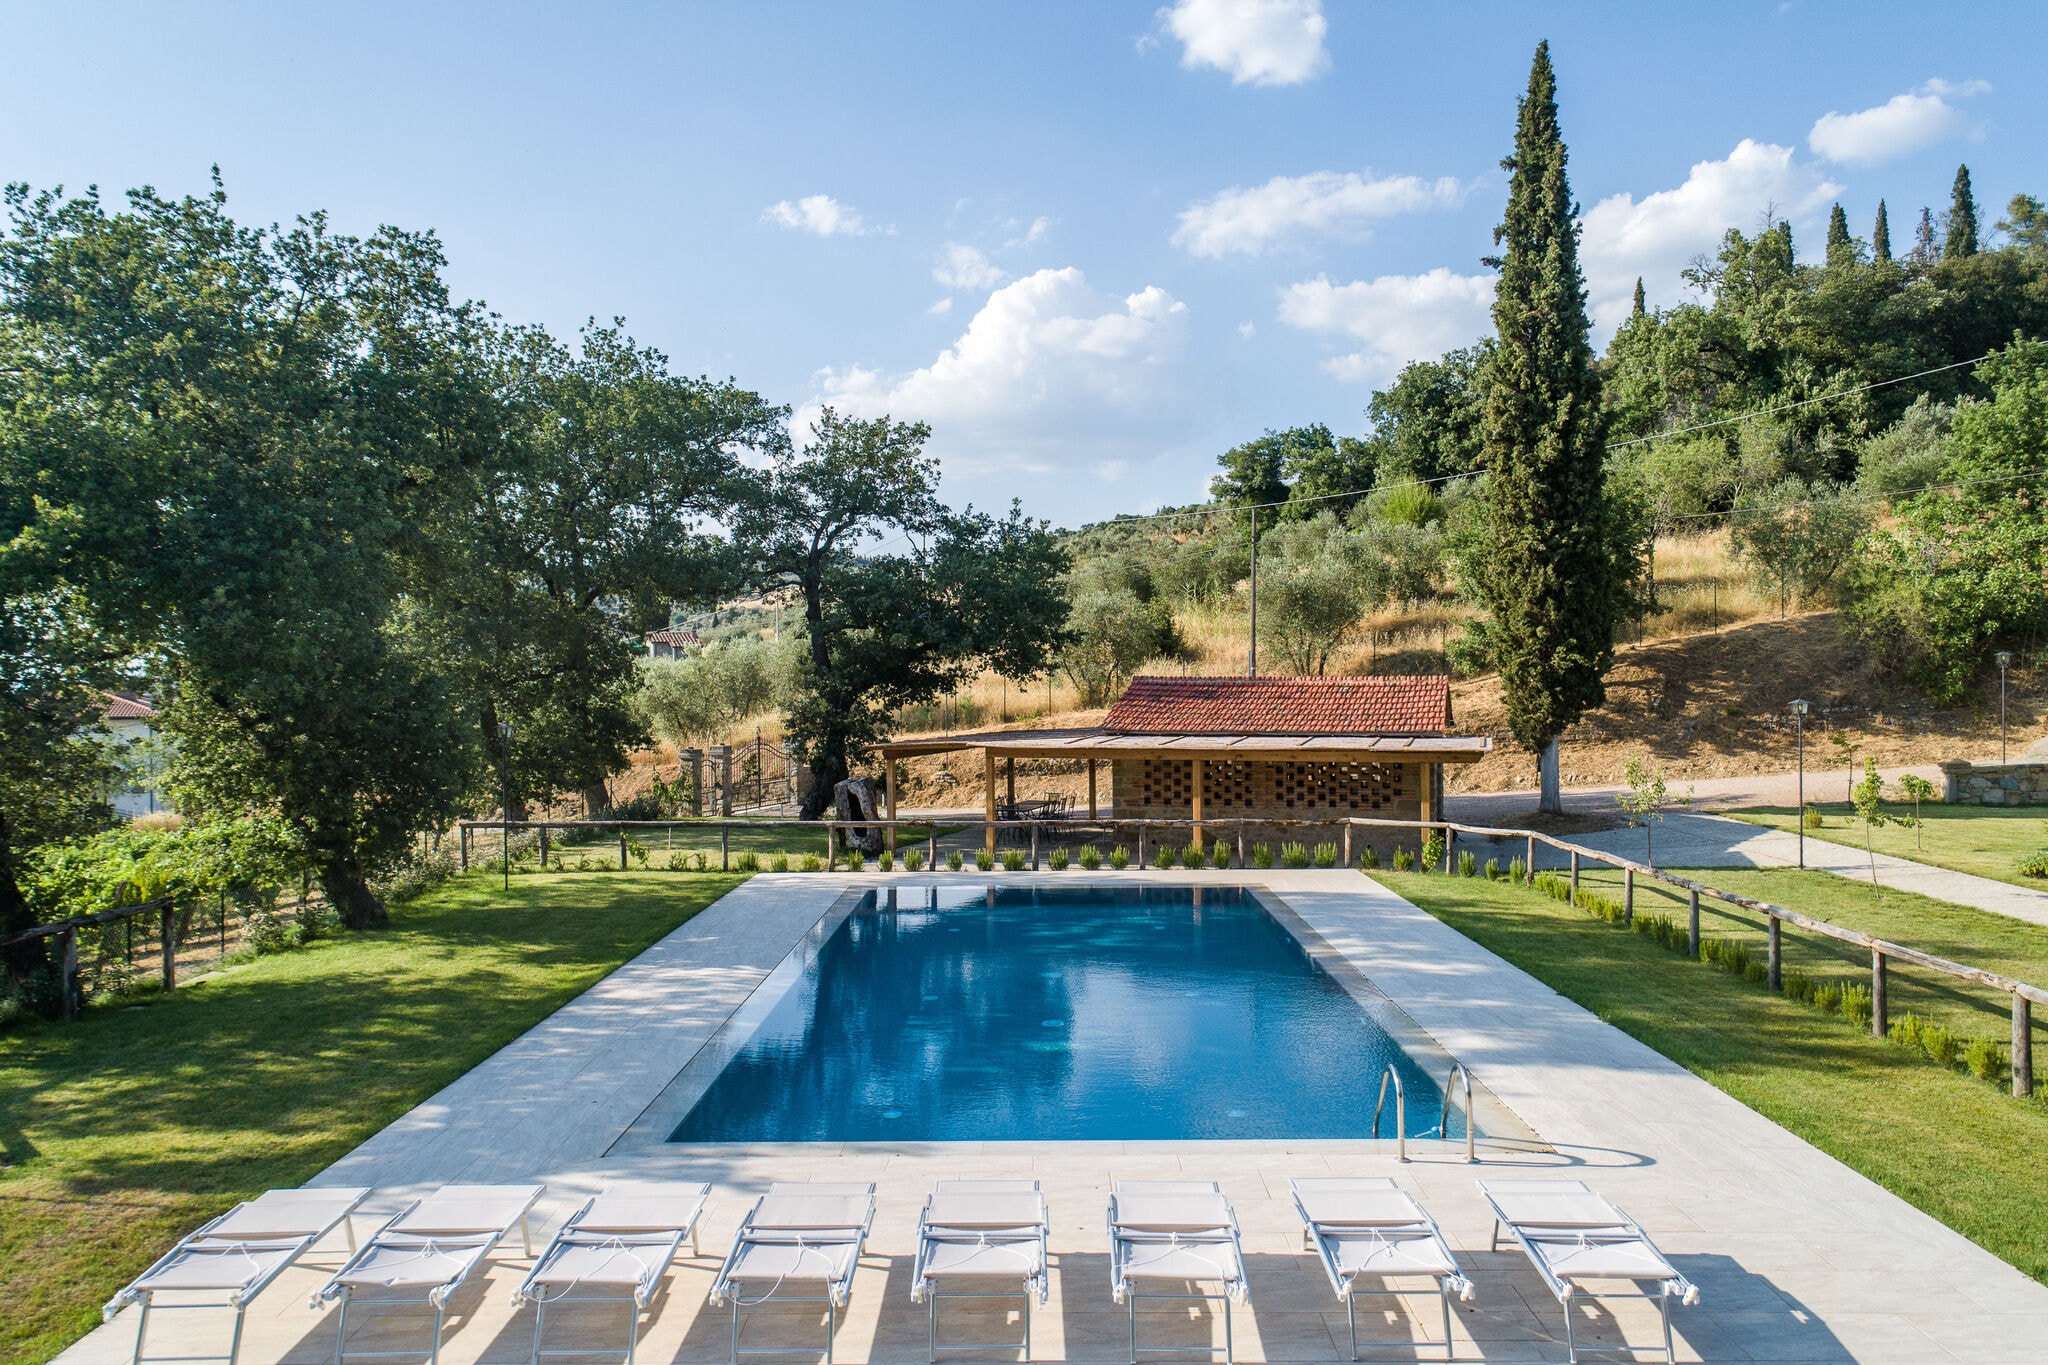 Gerenoveerde vakantievilla in Italië met privézwembad